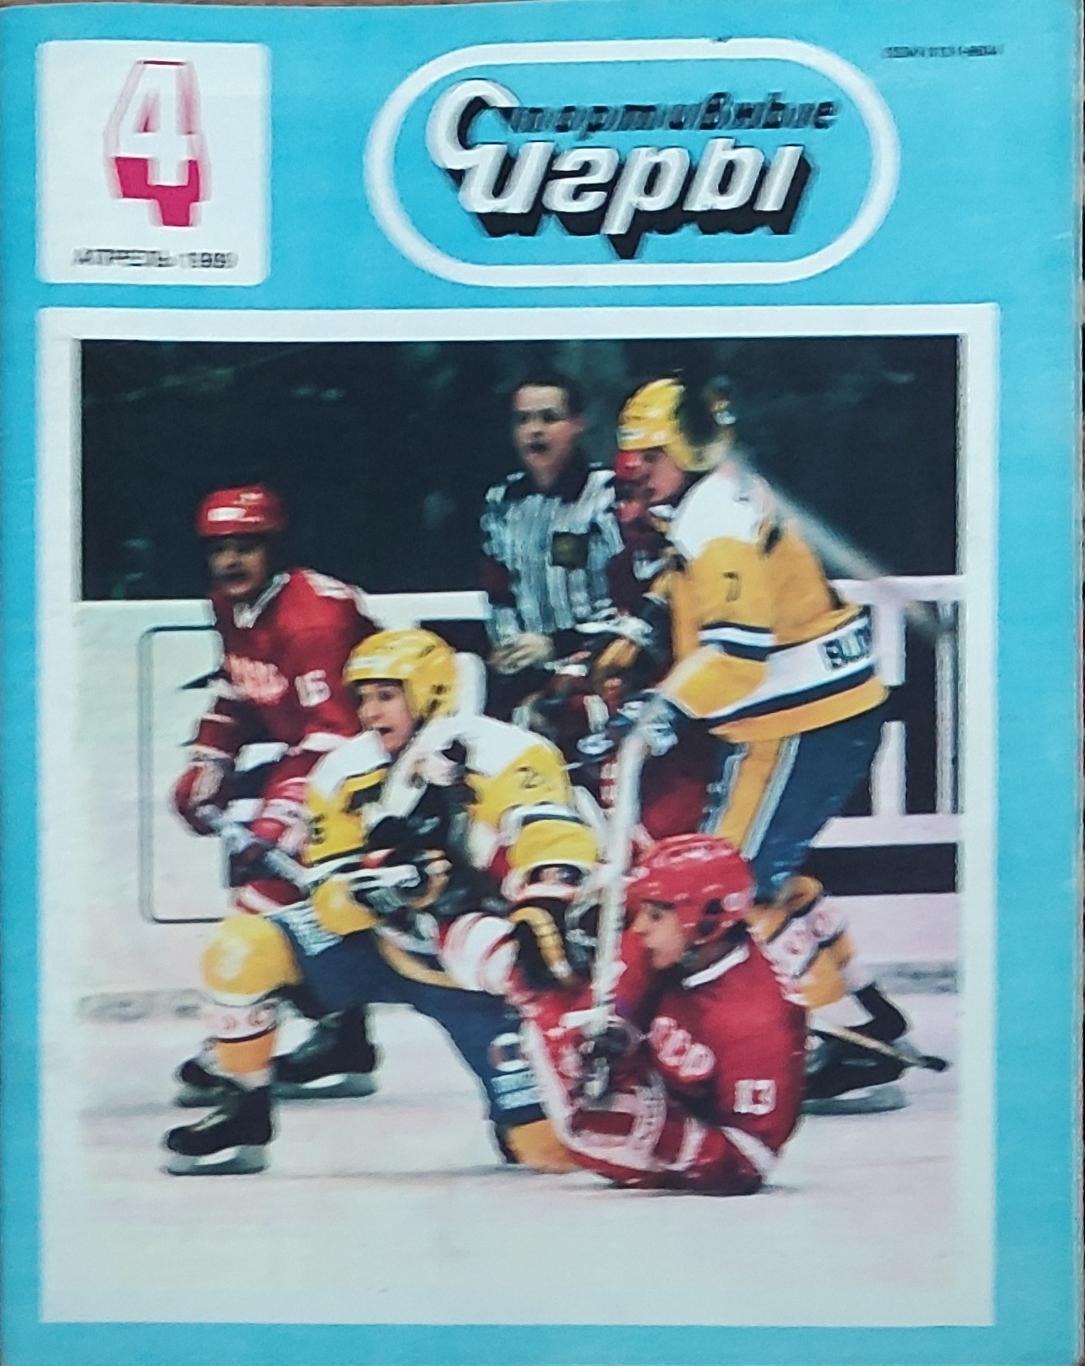 Журнал Спортивные игры 1989 номер 4